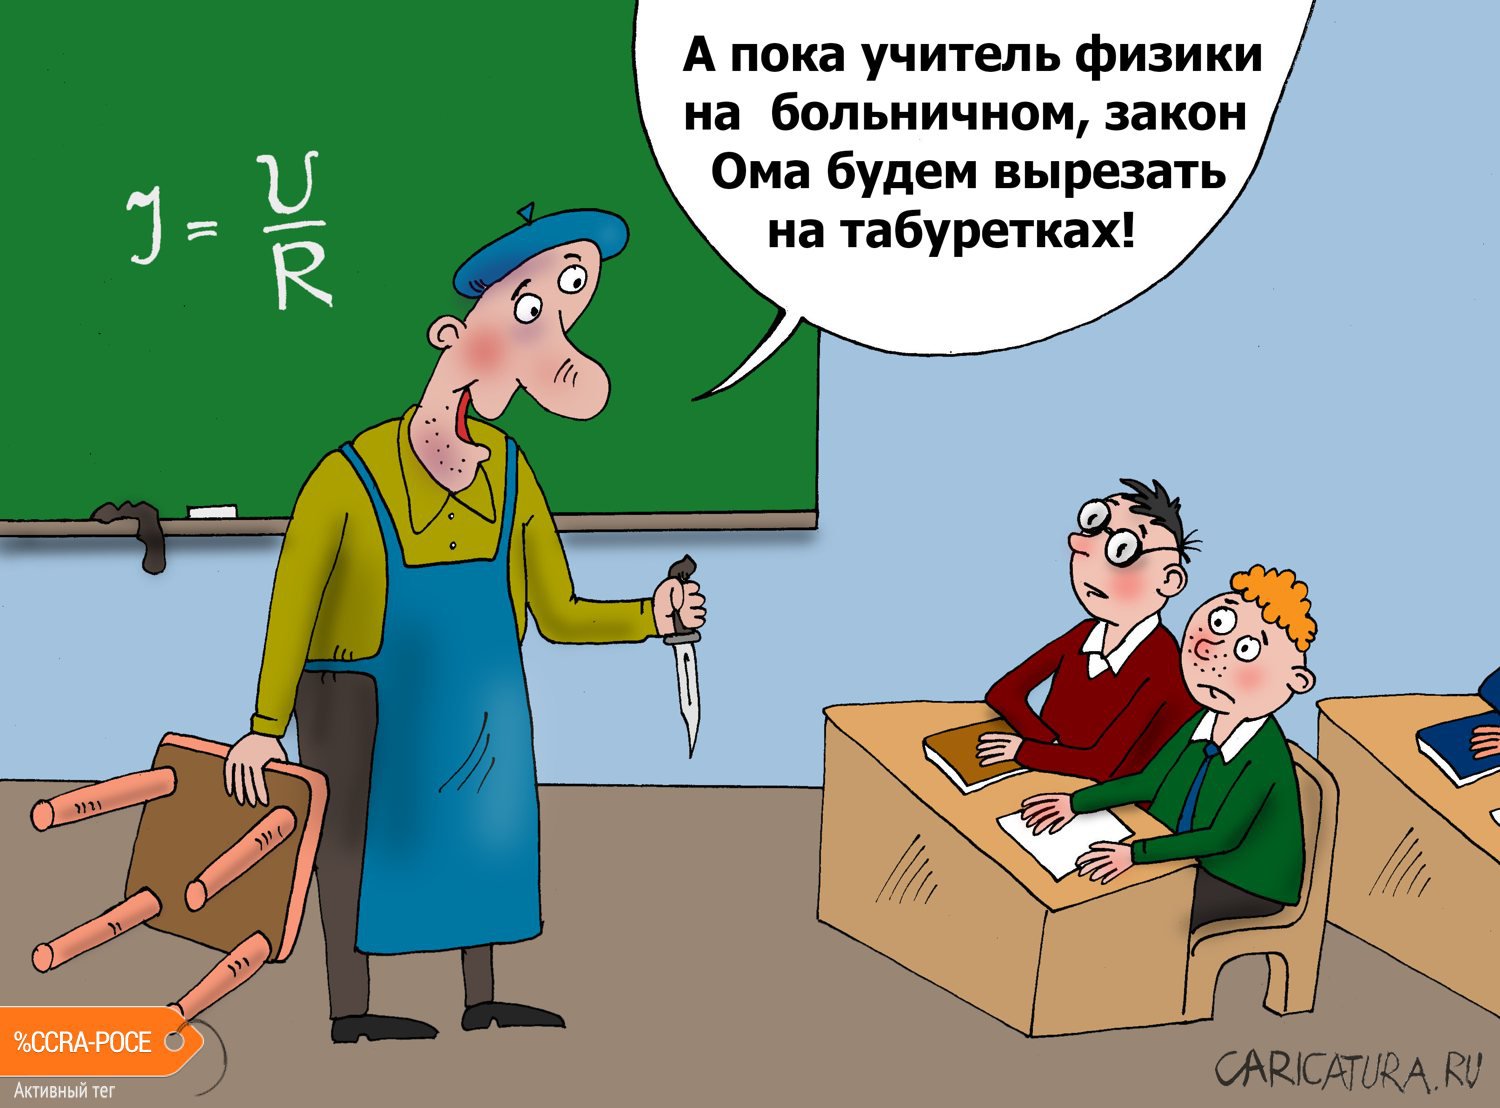 Карикатура "Трудовик", Валерий Тарасенко